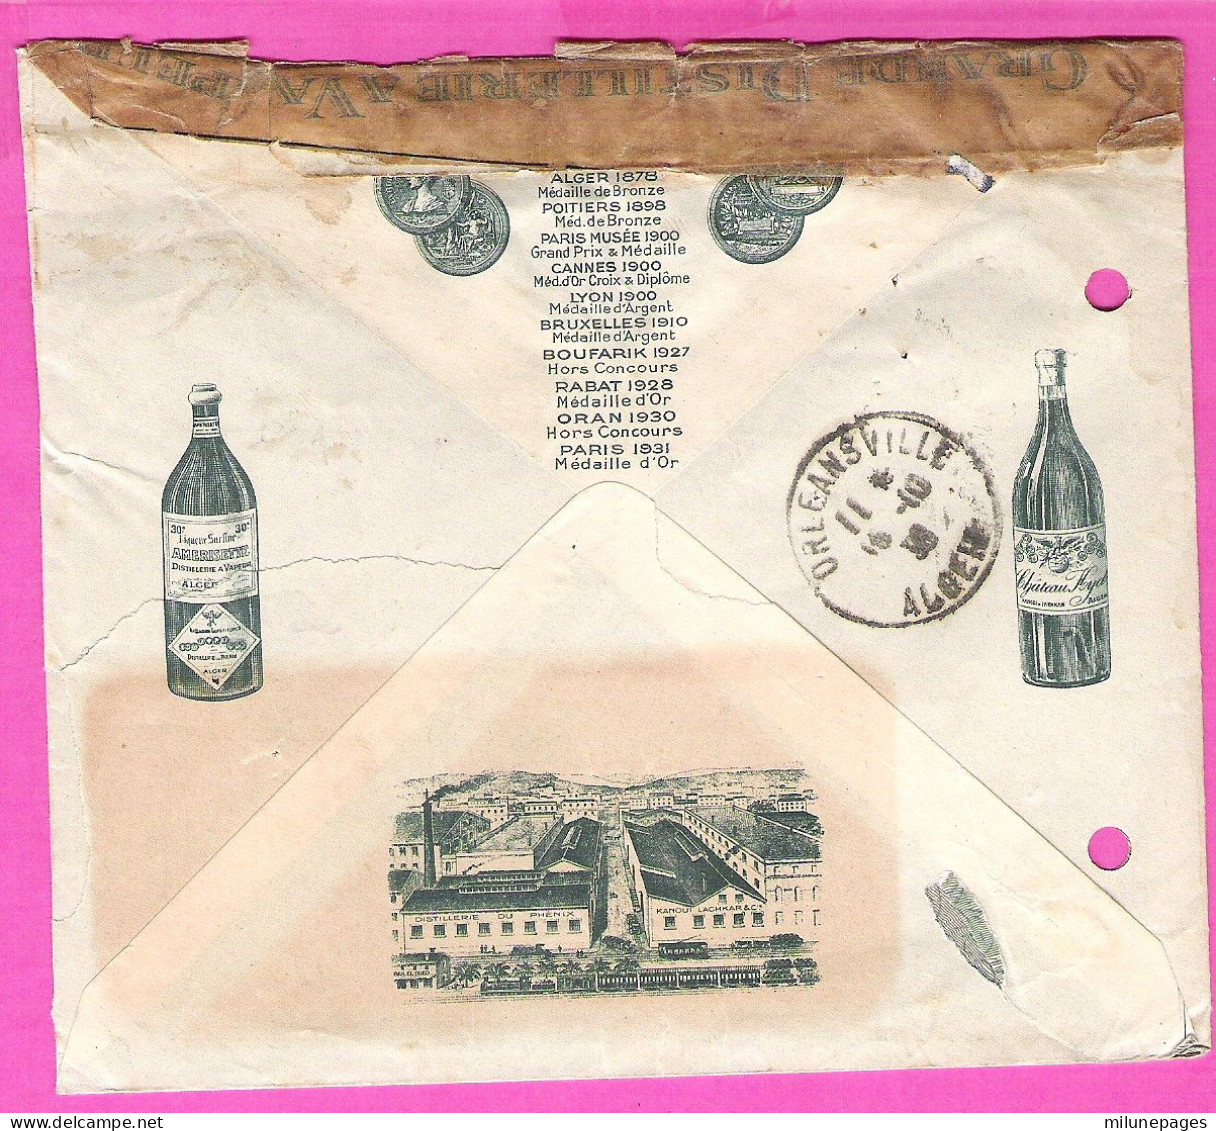 Enveloppe Illustrée Pour L'Anisette Du Phénix Kanoui, Lachkar & Cie à Alger En 1936 - Alimentos